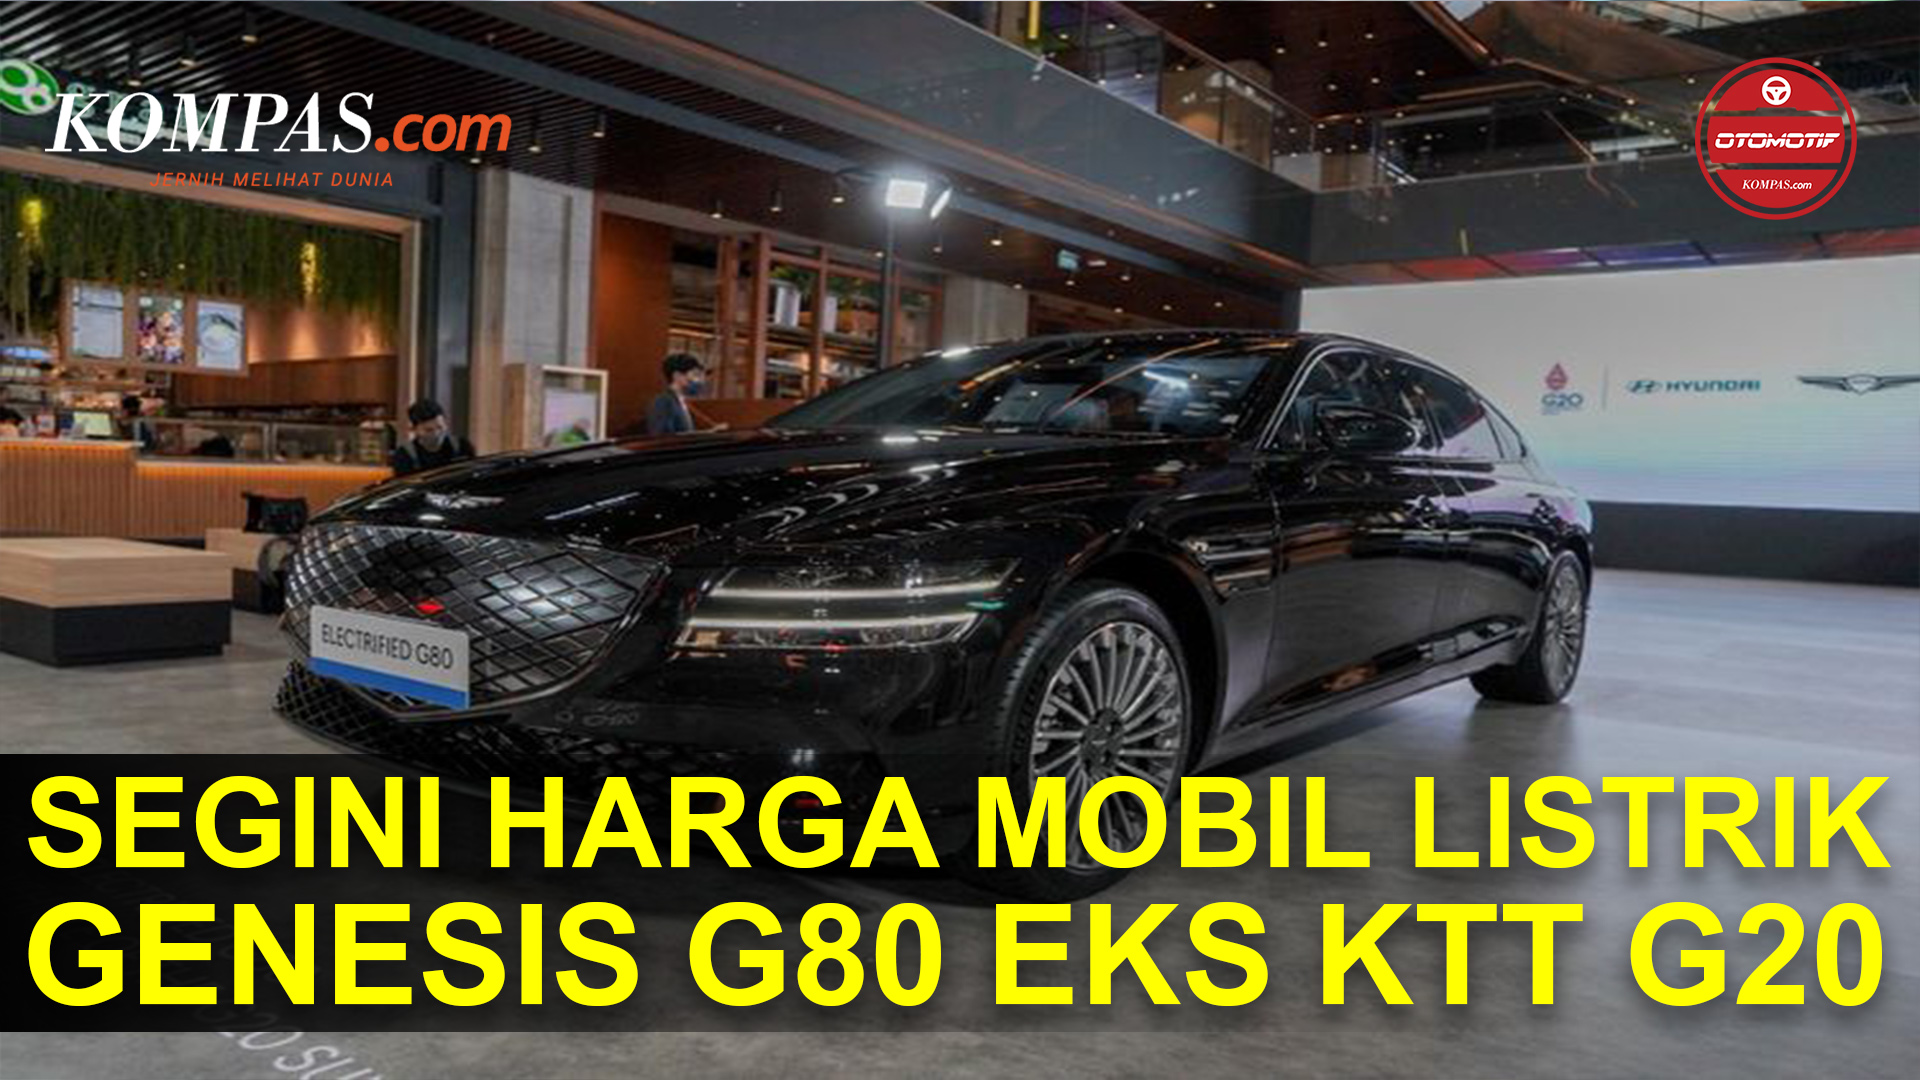 Mobil Listrik Genesis G80 Eks G20 Dijual, Harga Nyaris Rp 5 Miliar